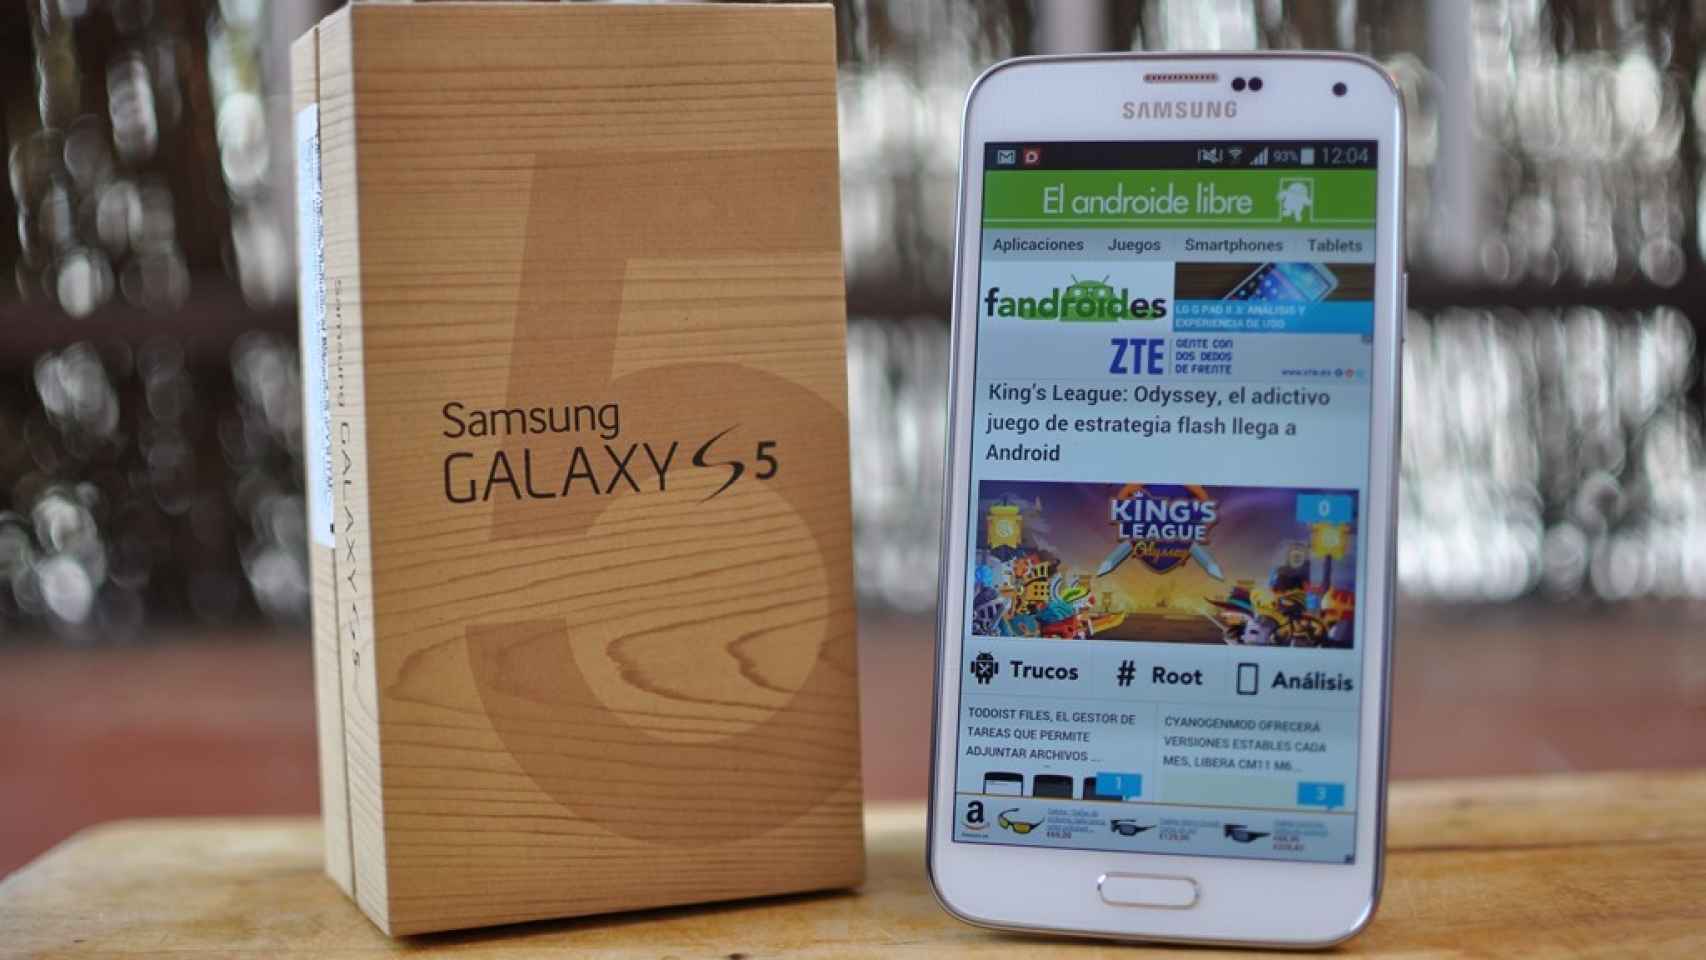 Samsung Galaxy S5: Análisis y experiencia de uso